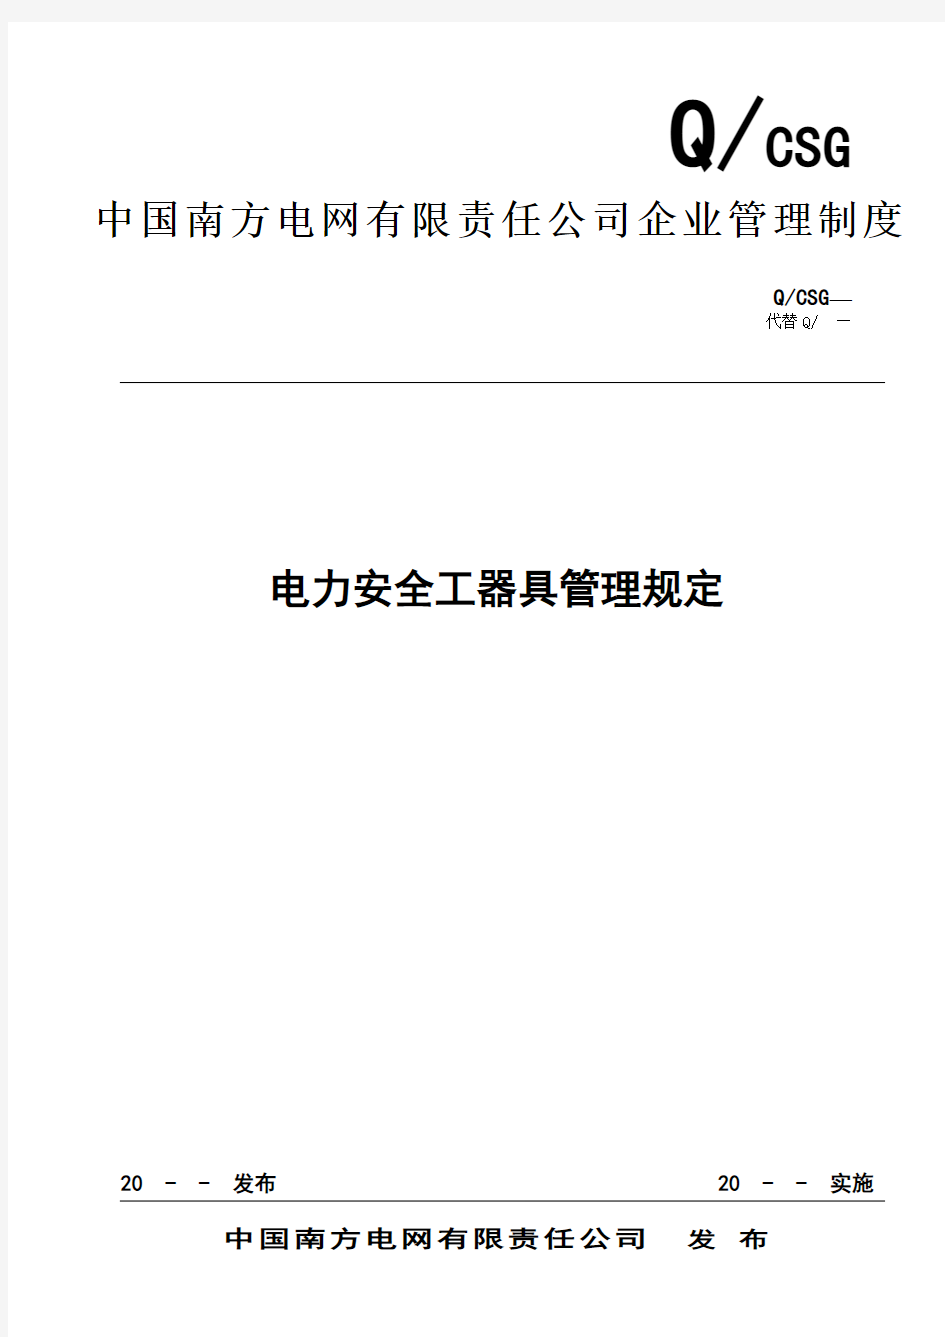 中国南方电网有限责任公司电力安全工器具管理规定